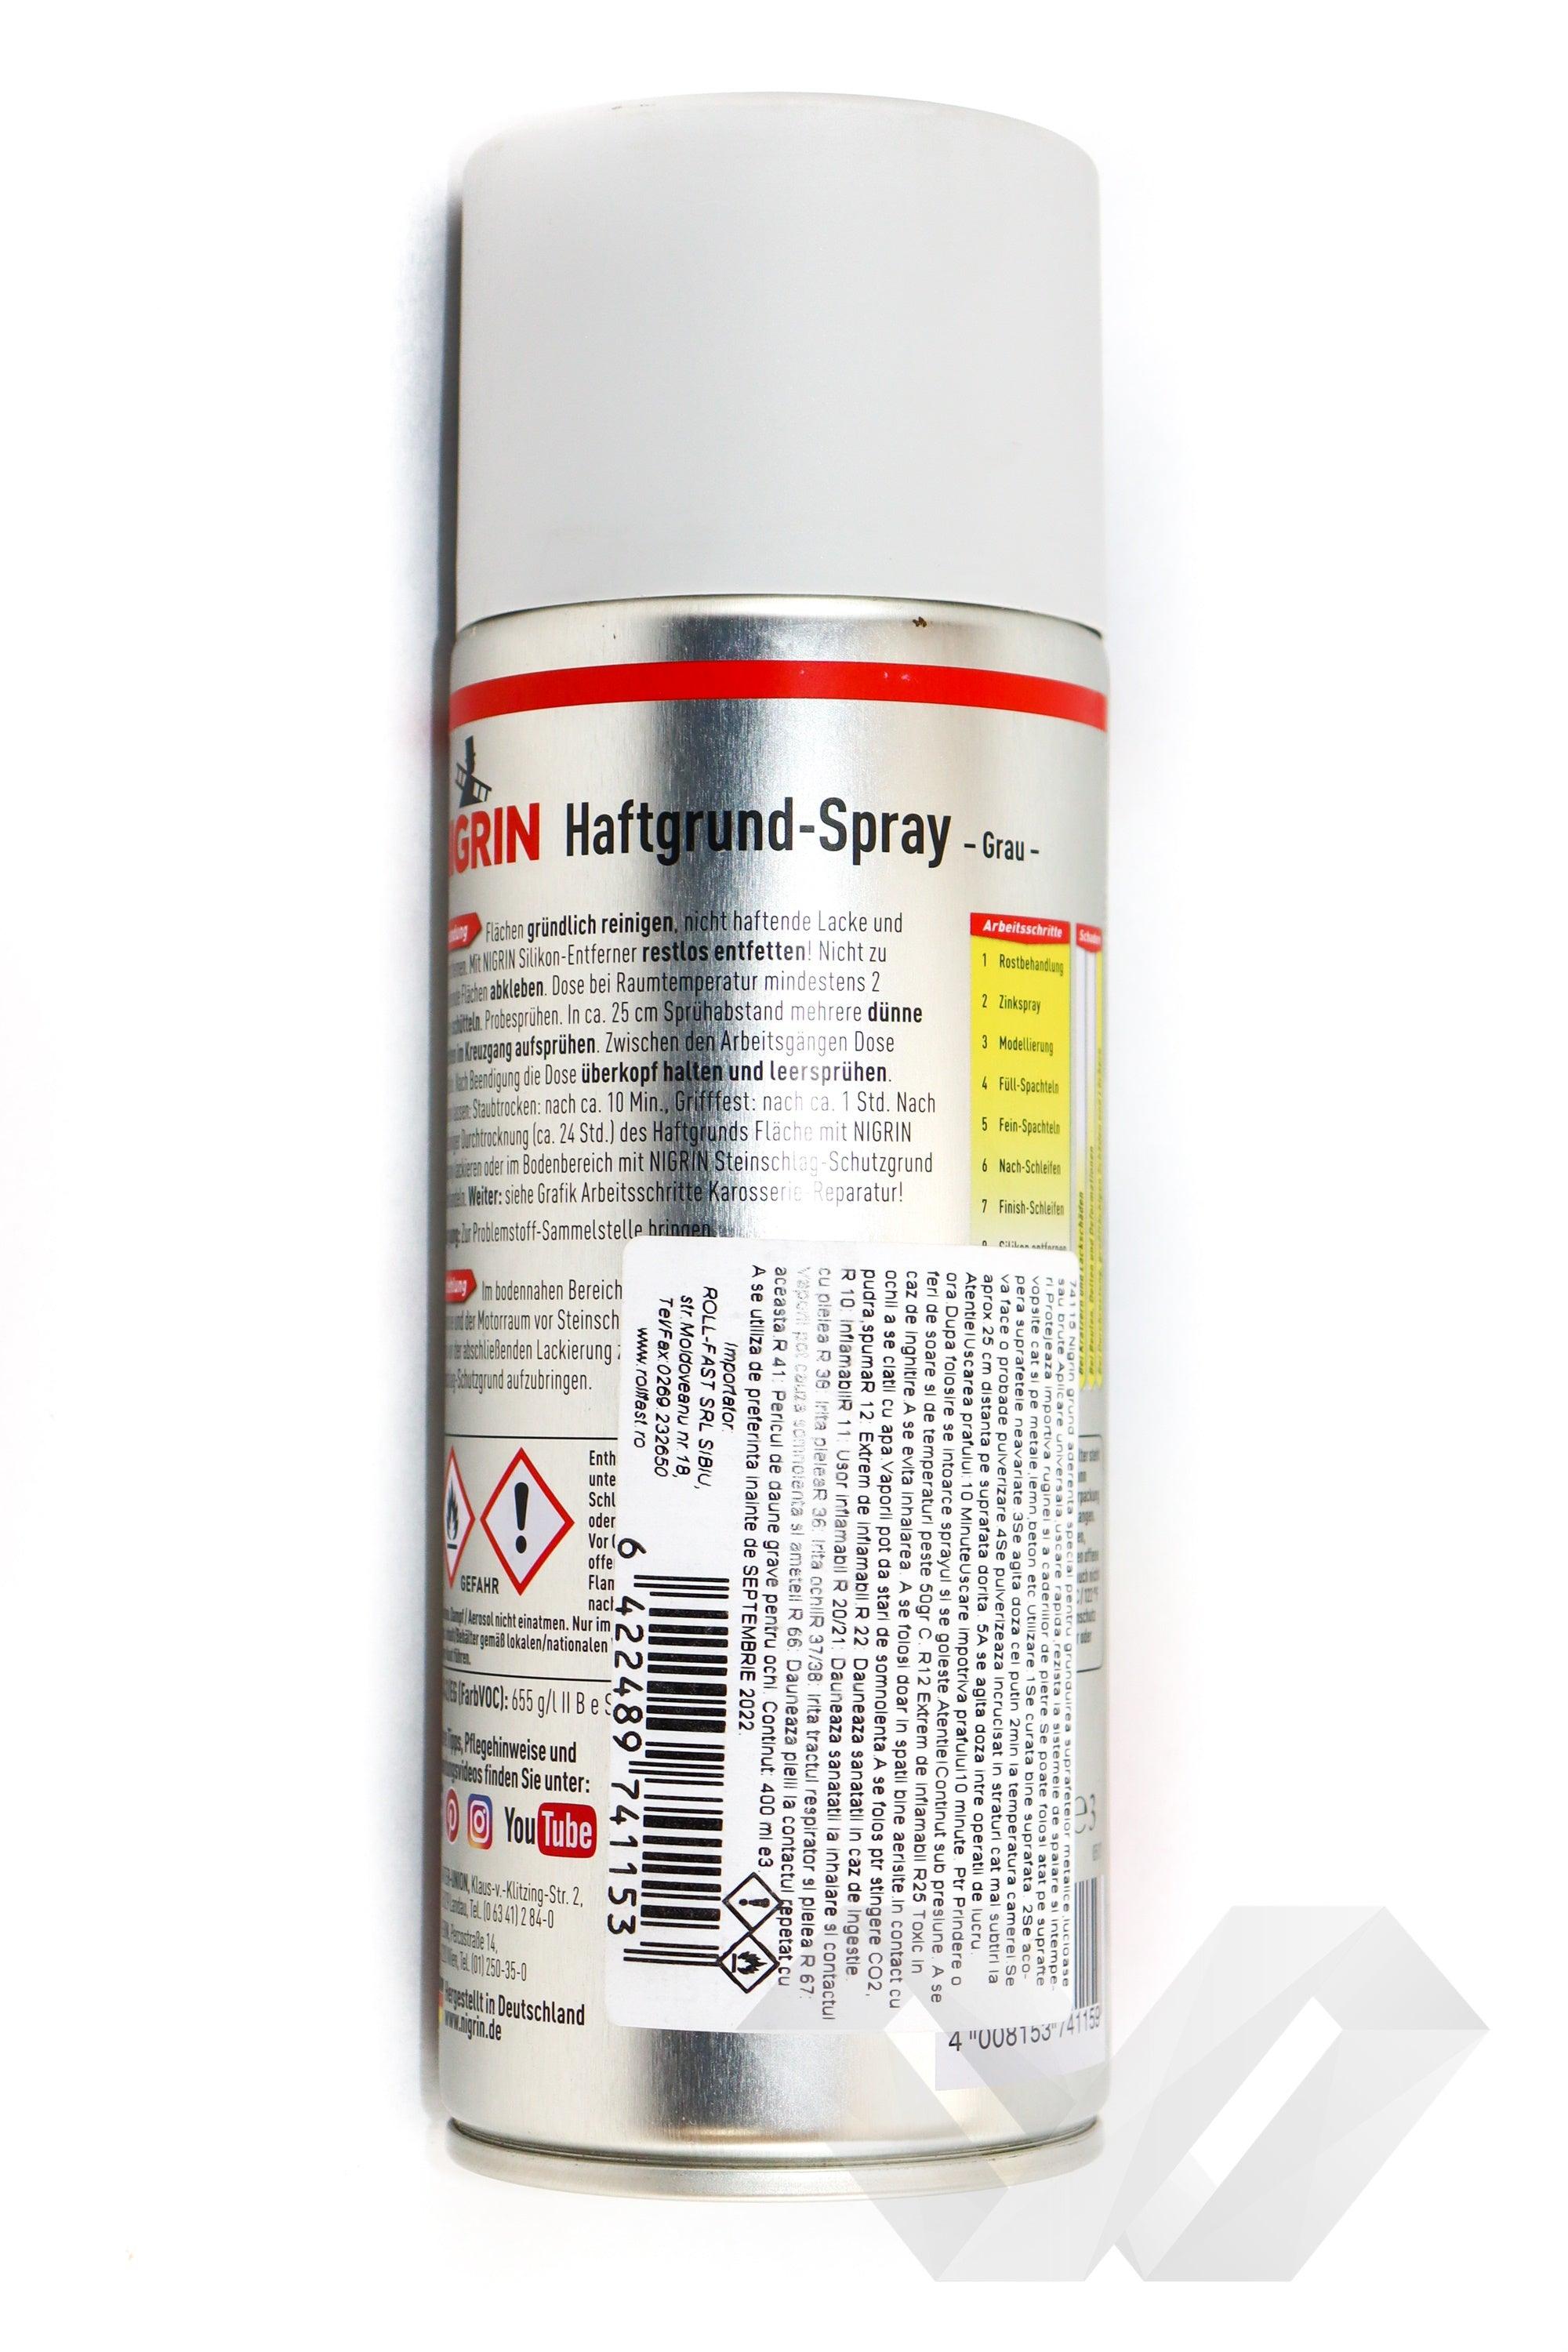 Spray grund aderent special Nigrin, 400 ml